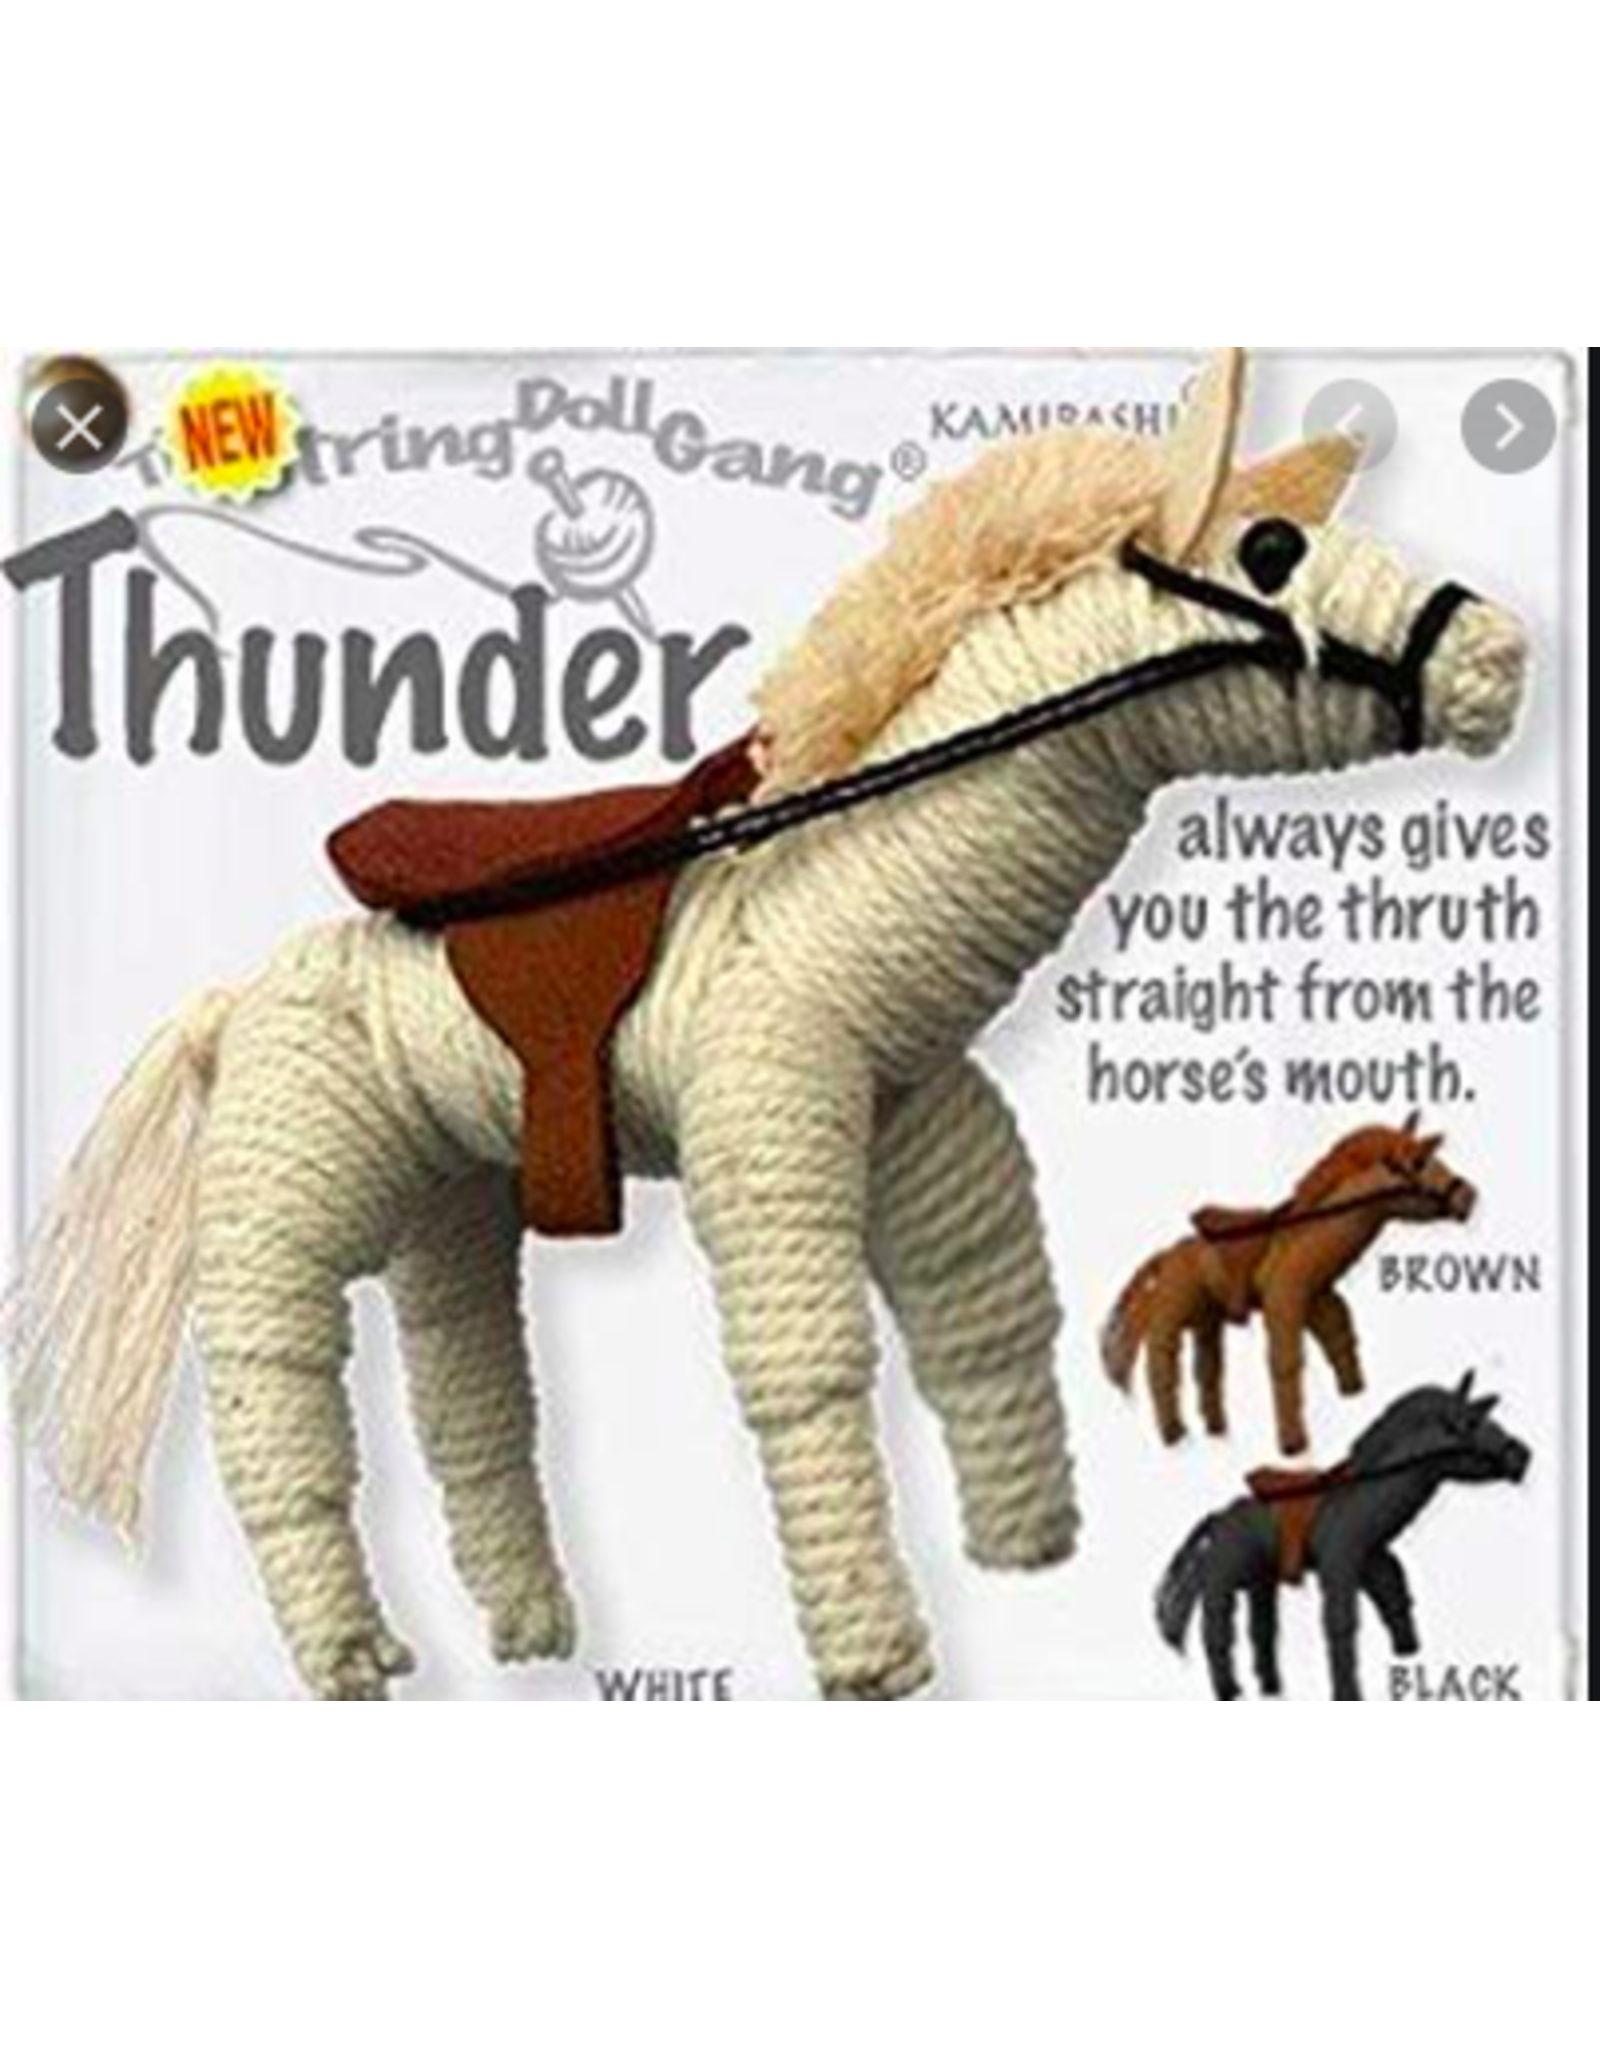 Stringdoll Thunder